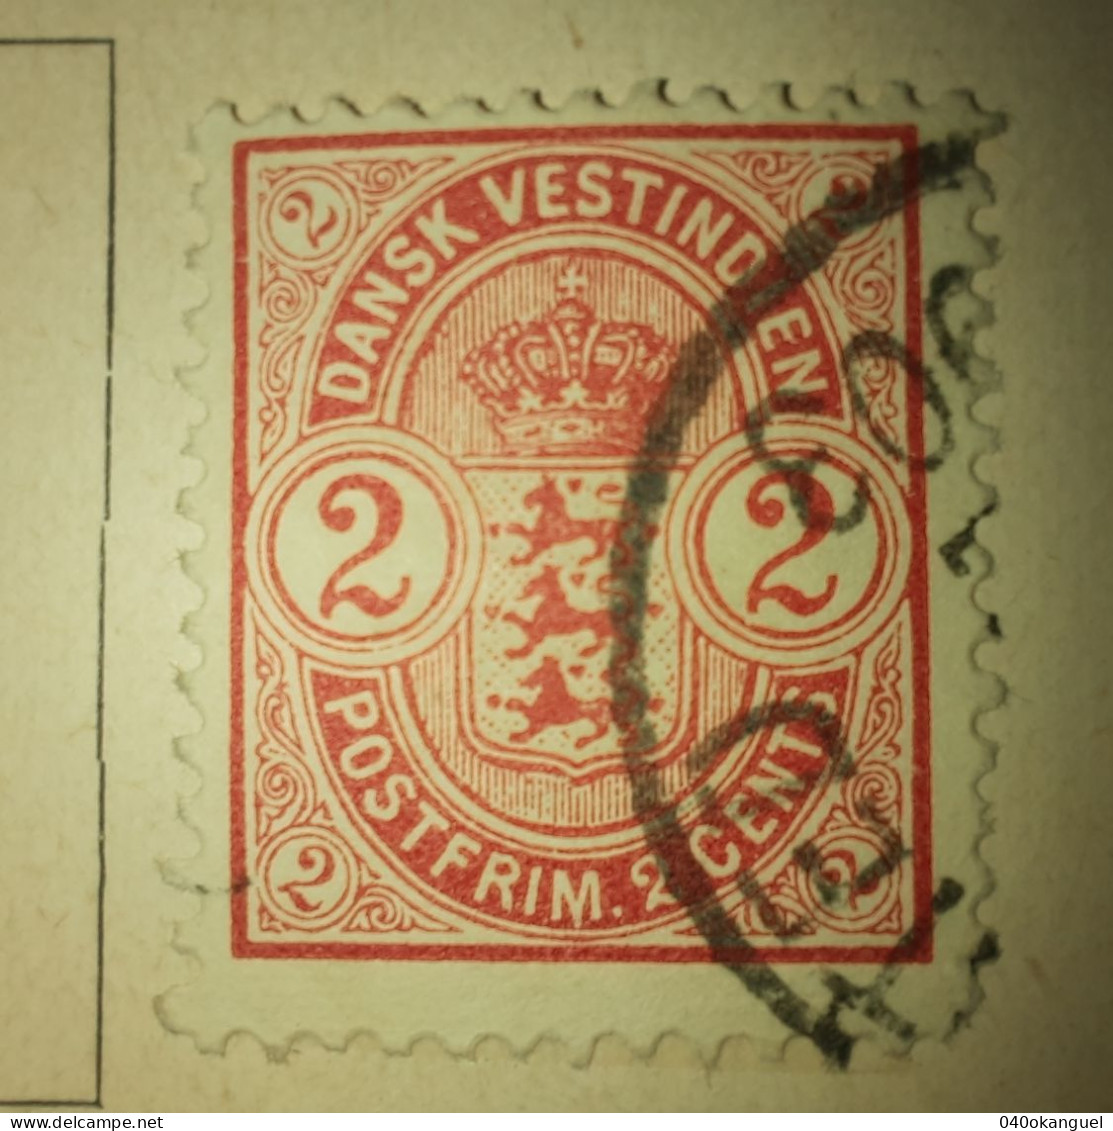 Westindien - Antillen - 1 Marke Von 1900  Gem. Scan - Danimarca (Antille)